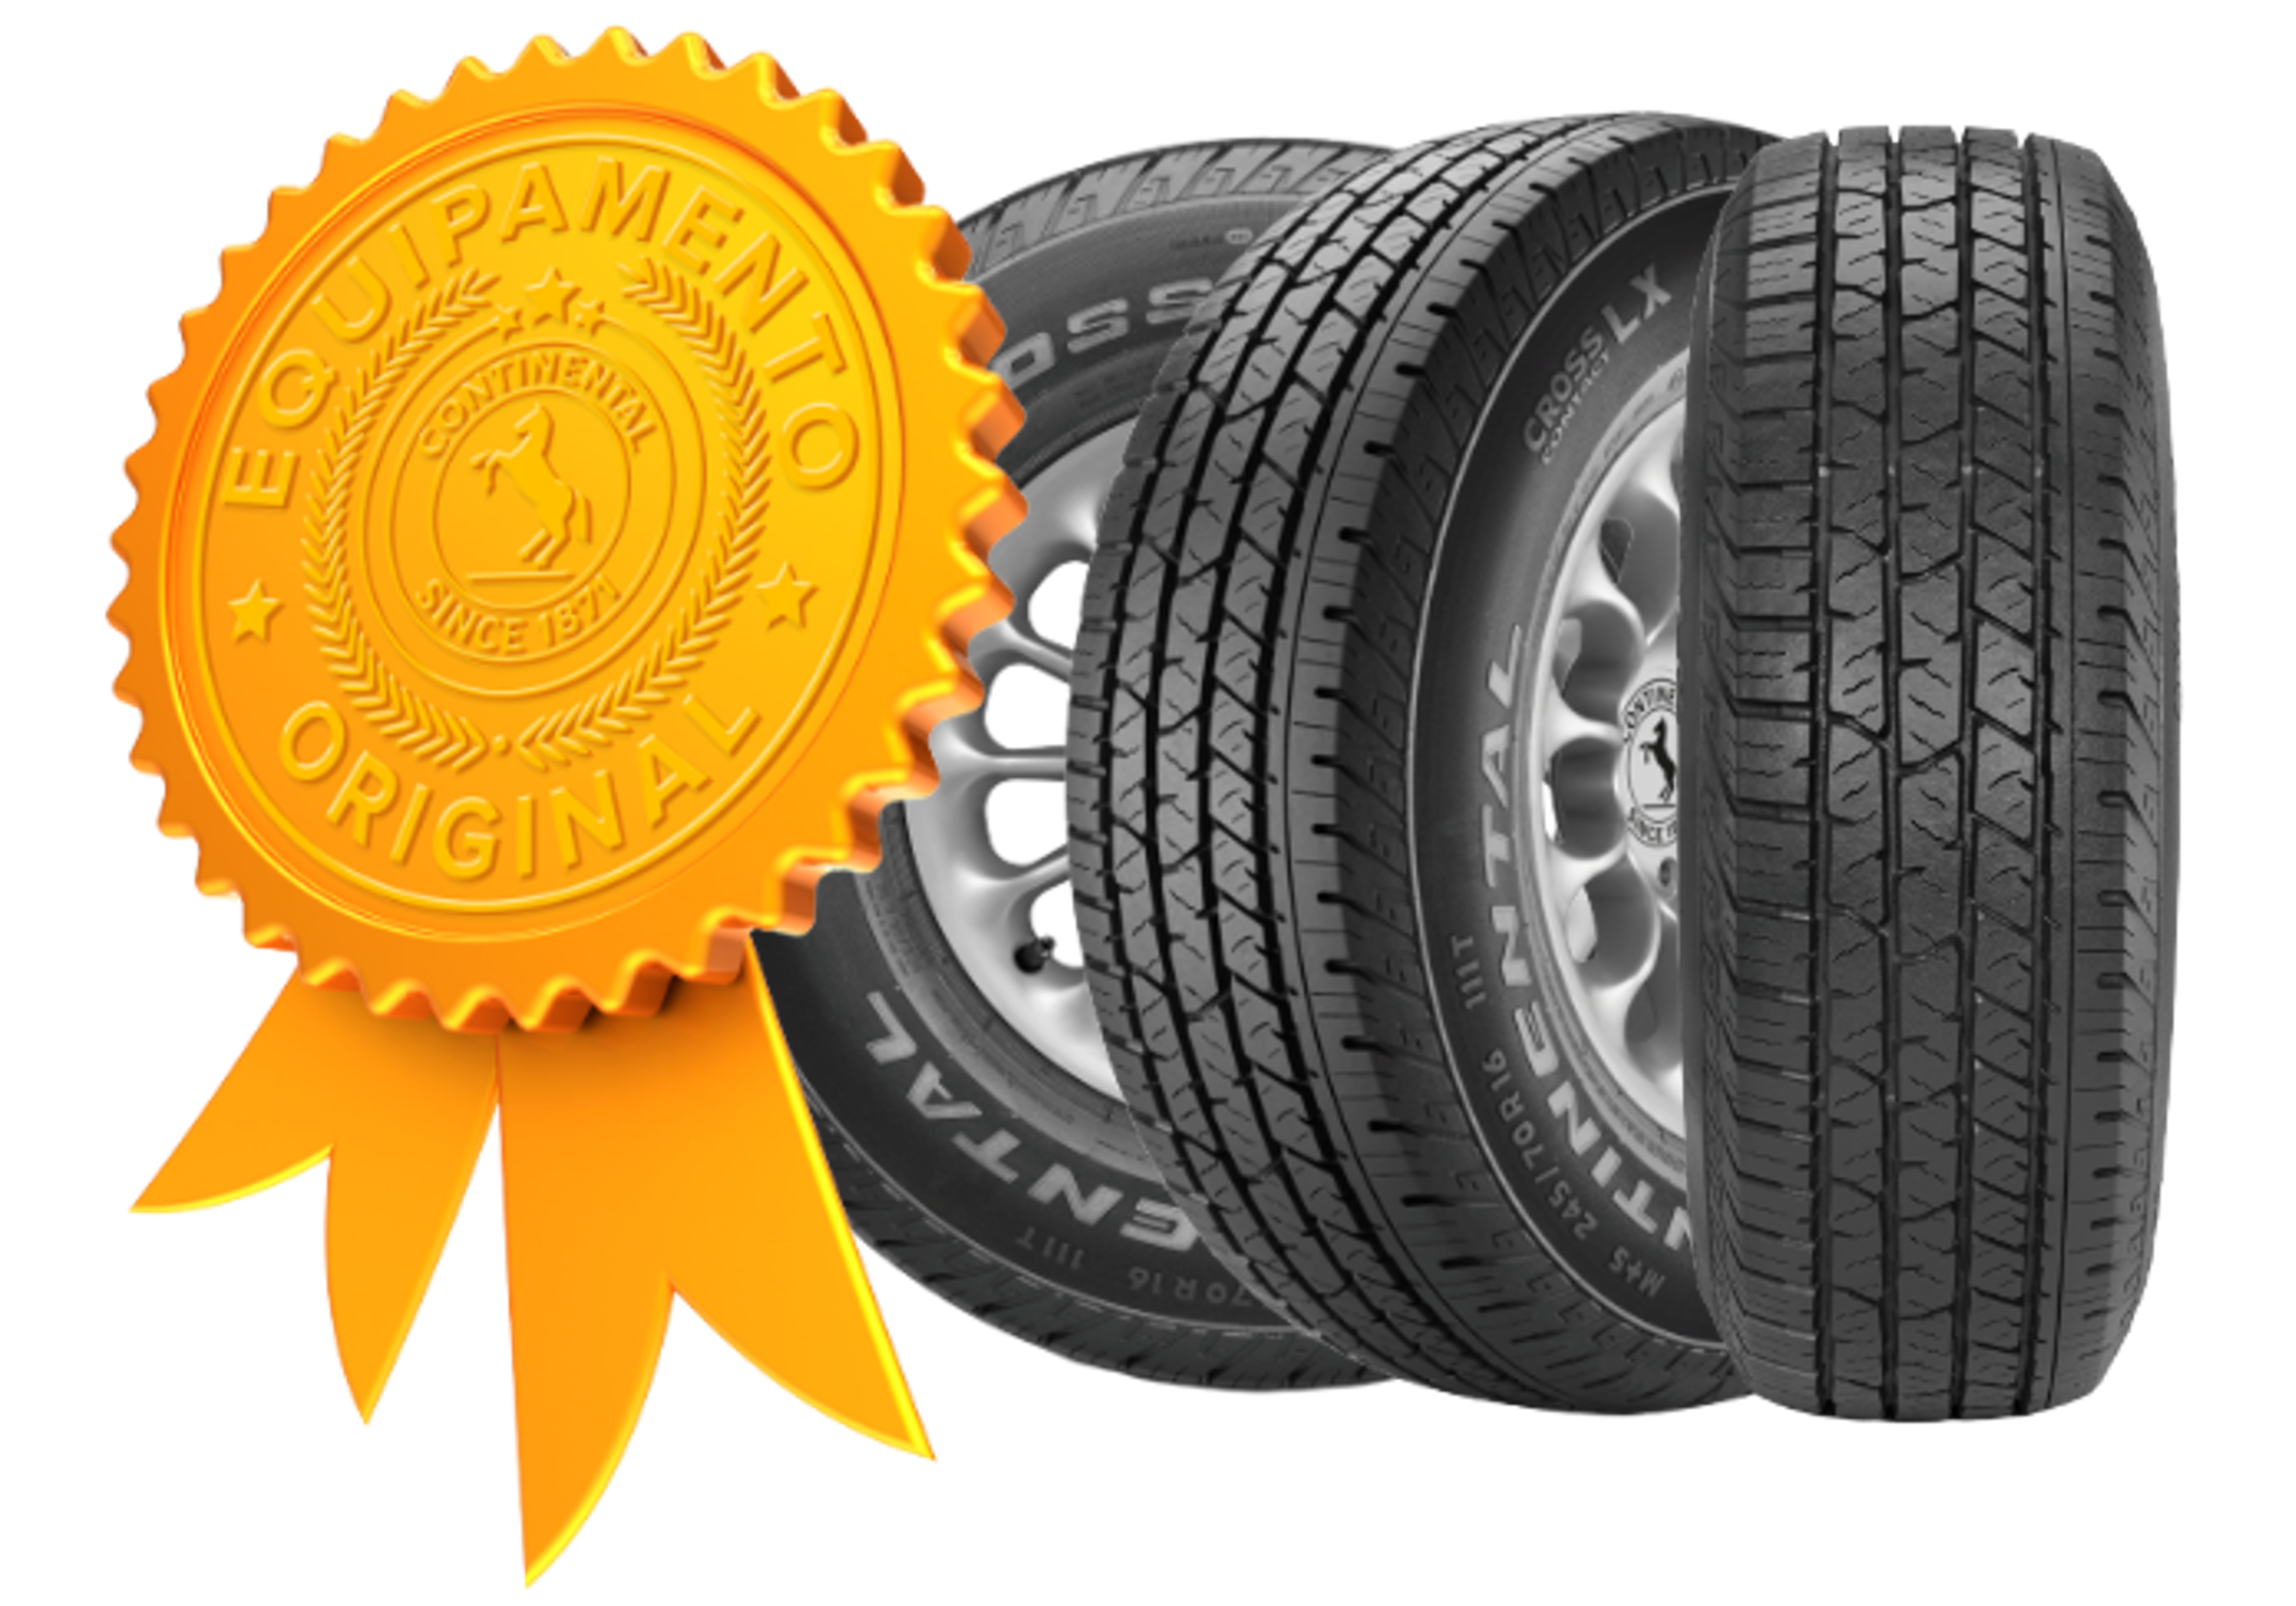 (arte com selo de qualidade de pneu original da Chevrolet a e três fotos do pneu original da S10 em ângulos diferentes)